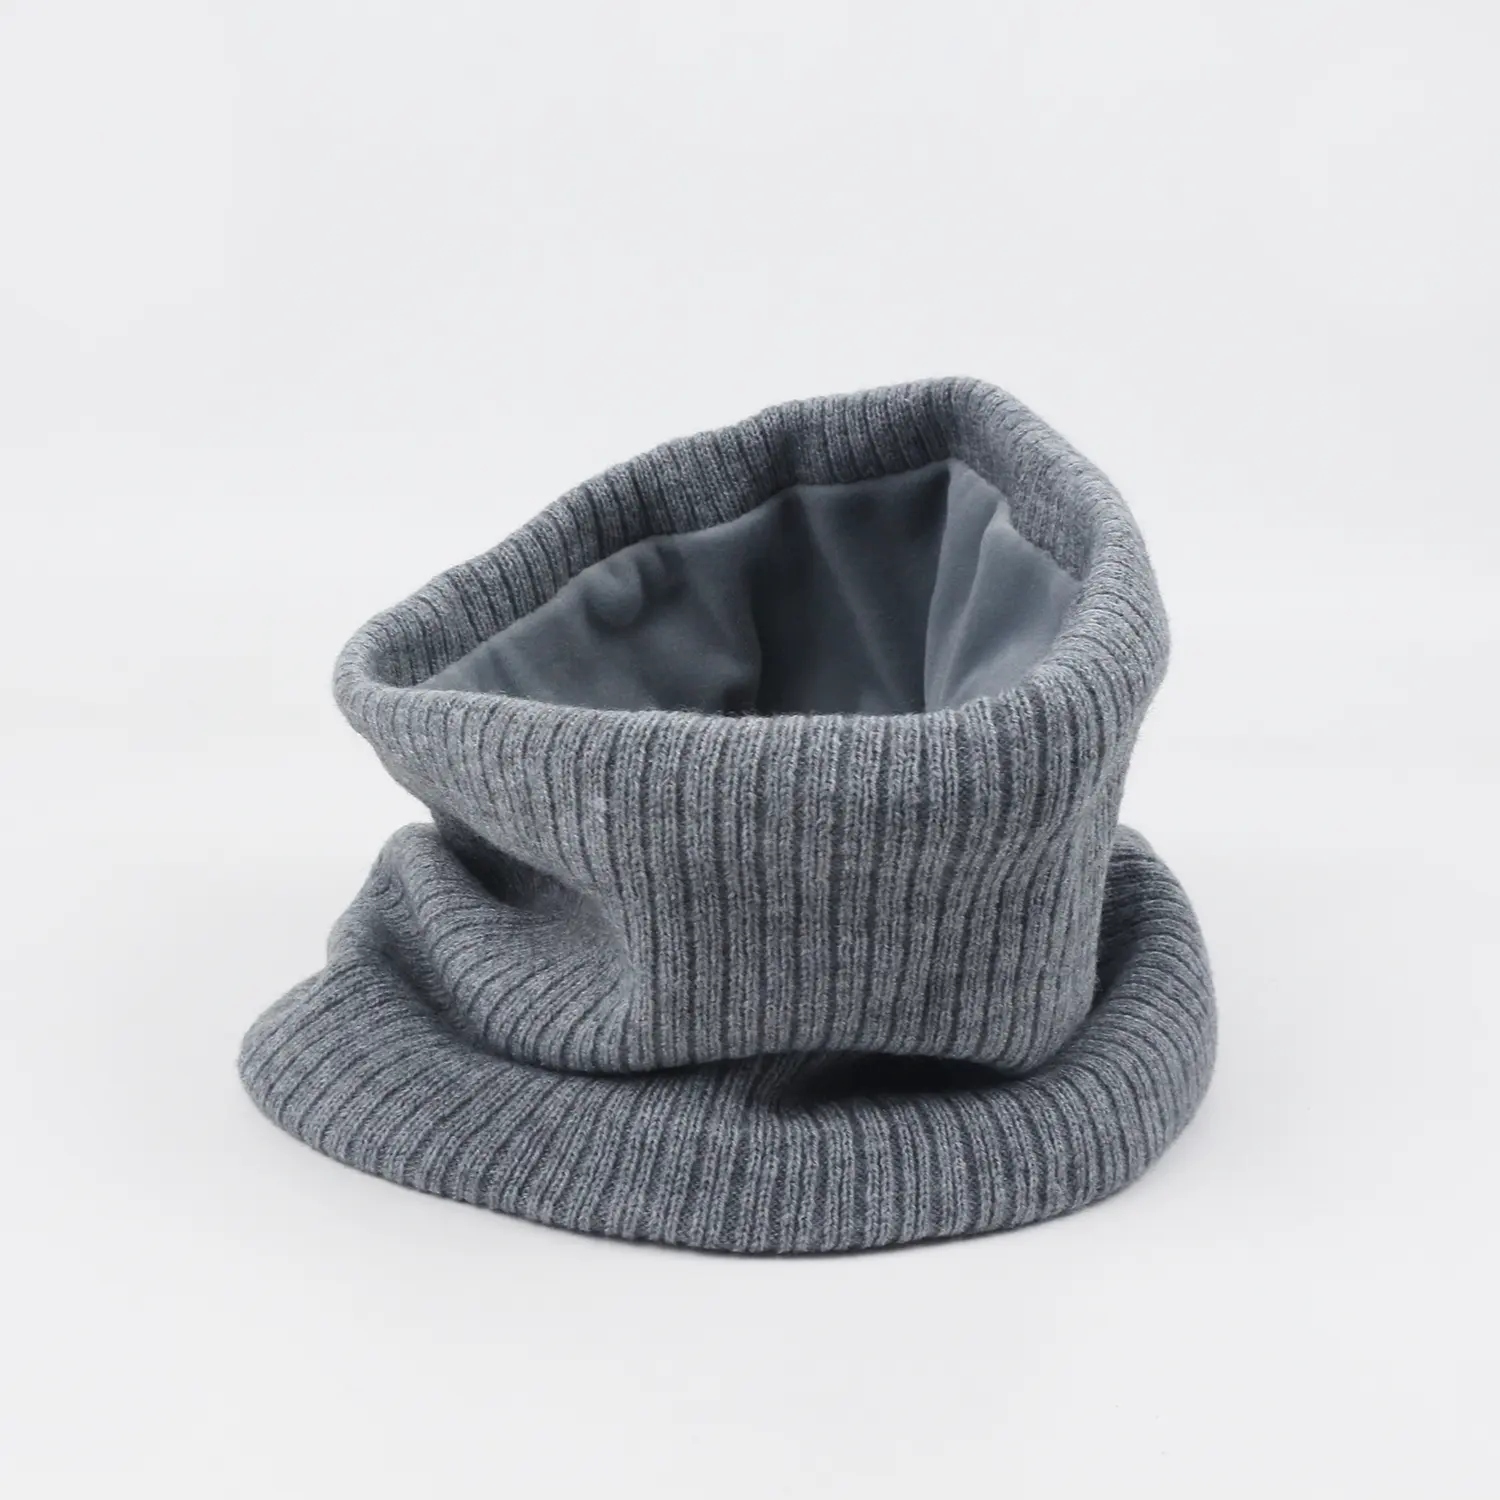 Sarung tangan dan set topi rajutan jacquard hangat musim dingin promosi kualitas tinggi mode